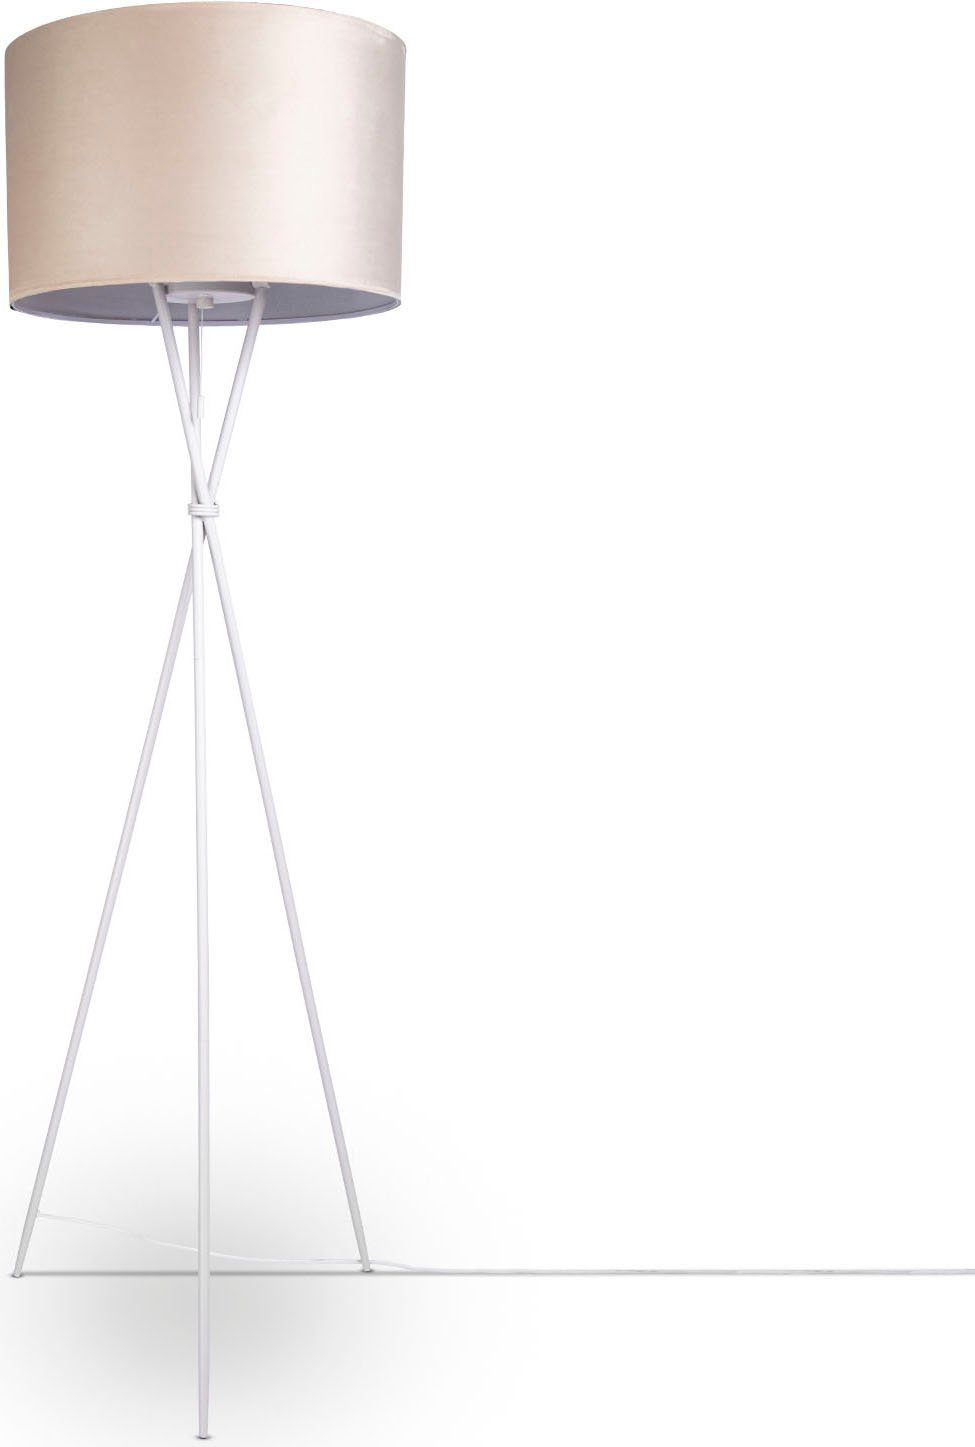 Paco Home Stehlampe Kate uni Color, ohne Leuchtmittel, Wohnzimmer Dreibein Standleuchte Velour Höhe 177,5cm Filigran E27 beige